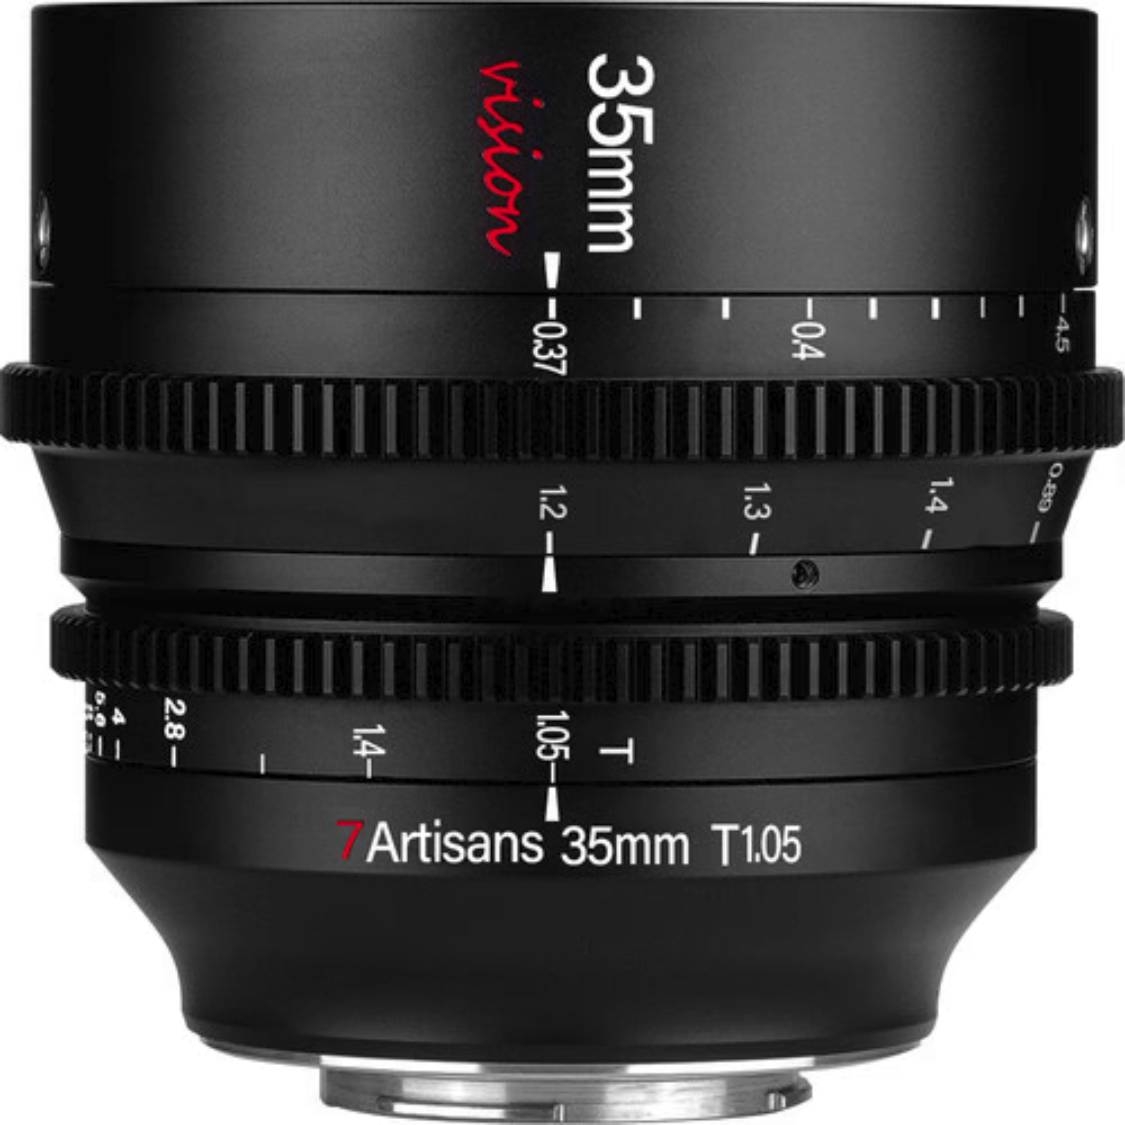 7artisans 35mm T1.05 Vision Cine Lens for L Mount